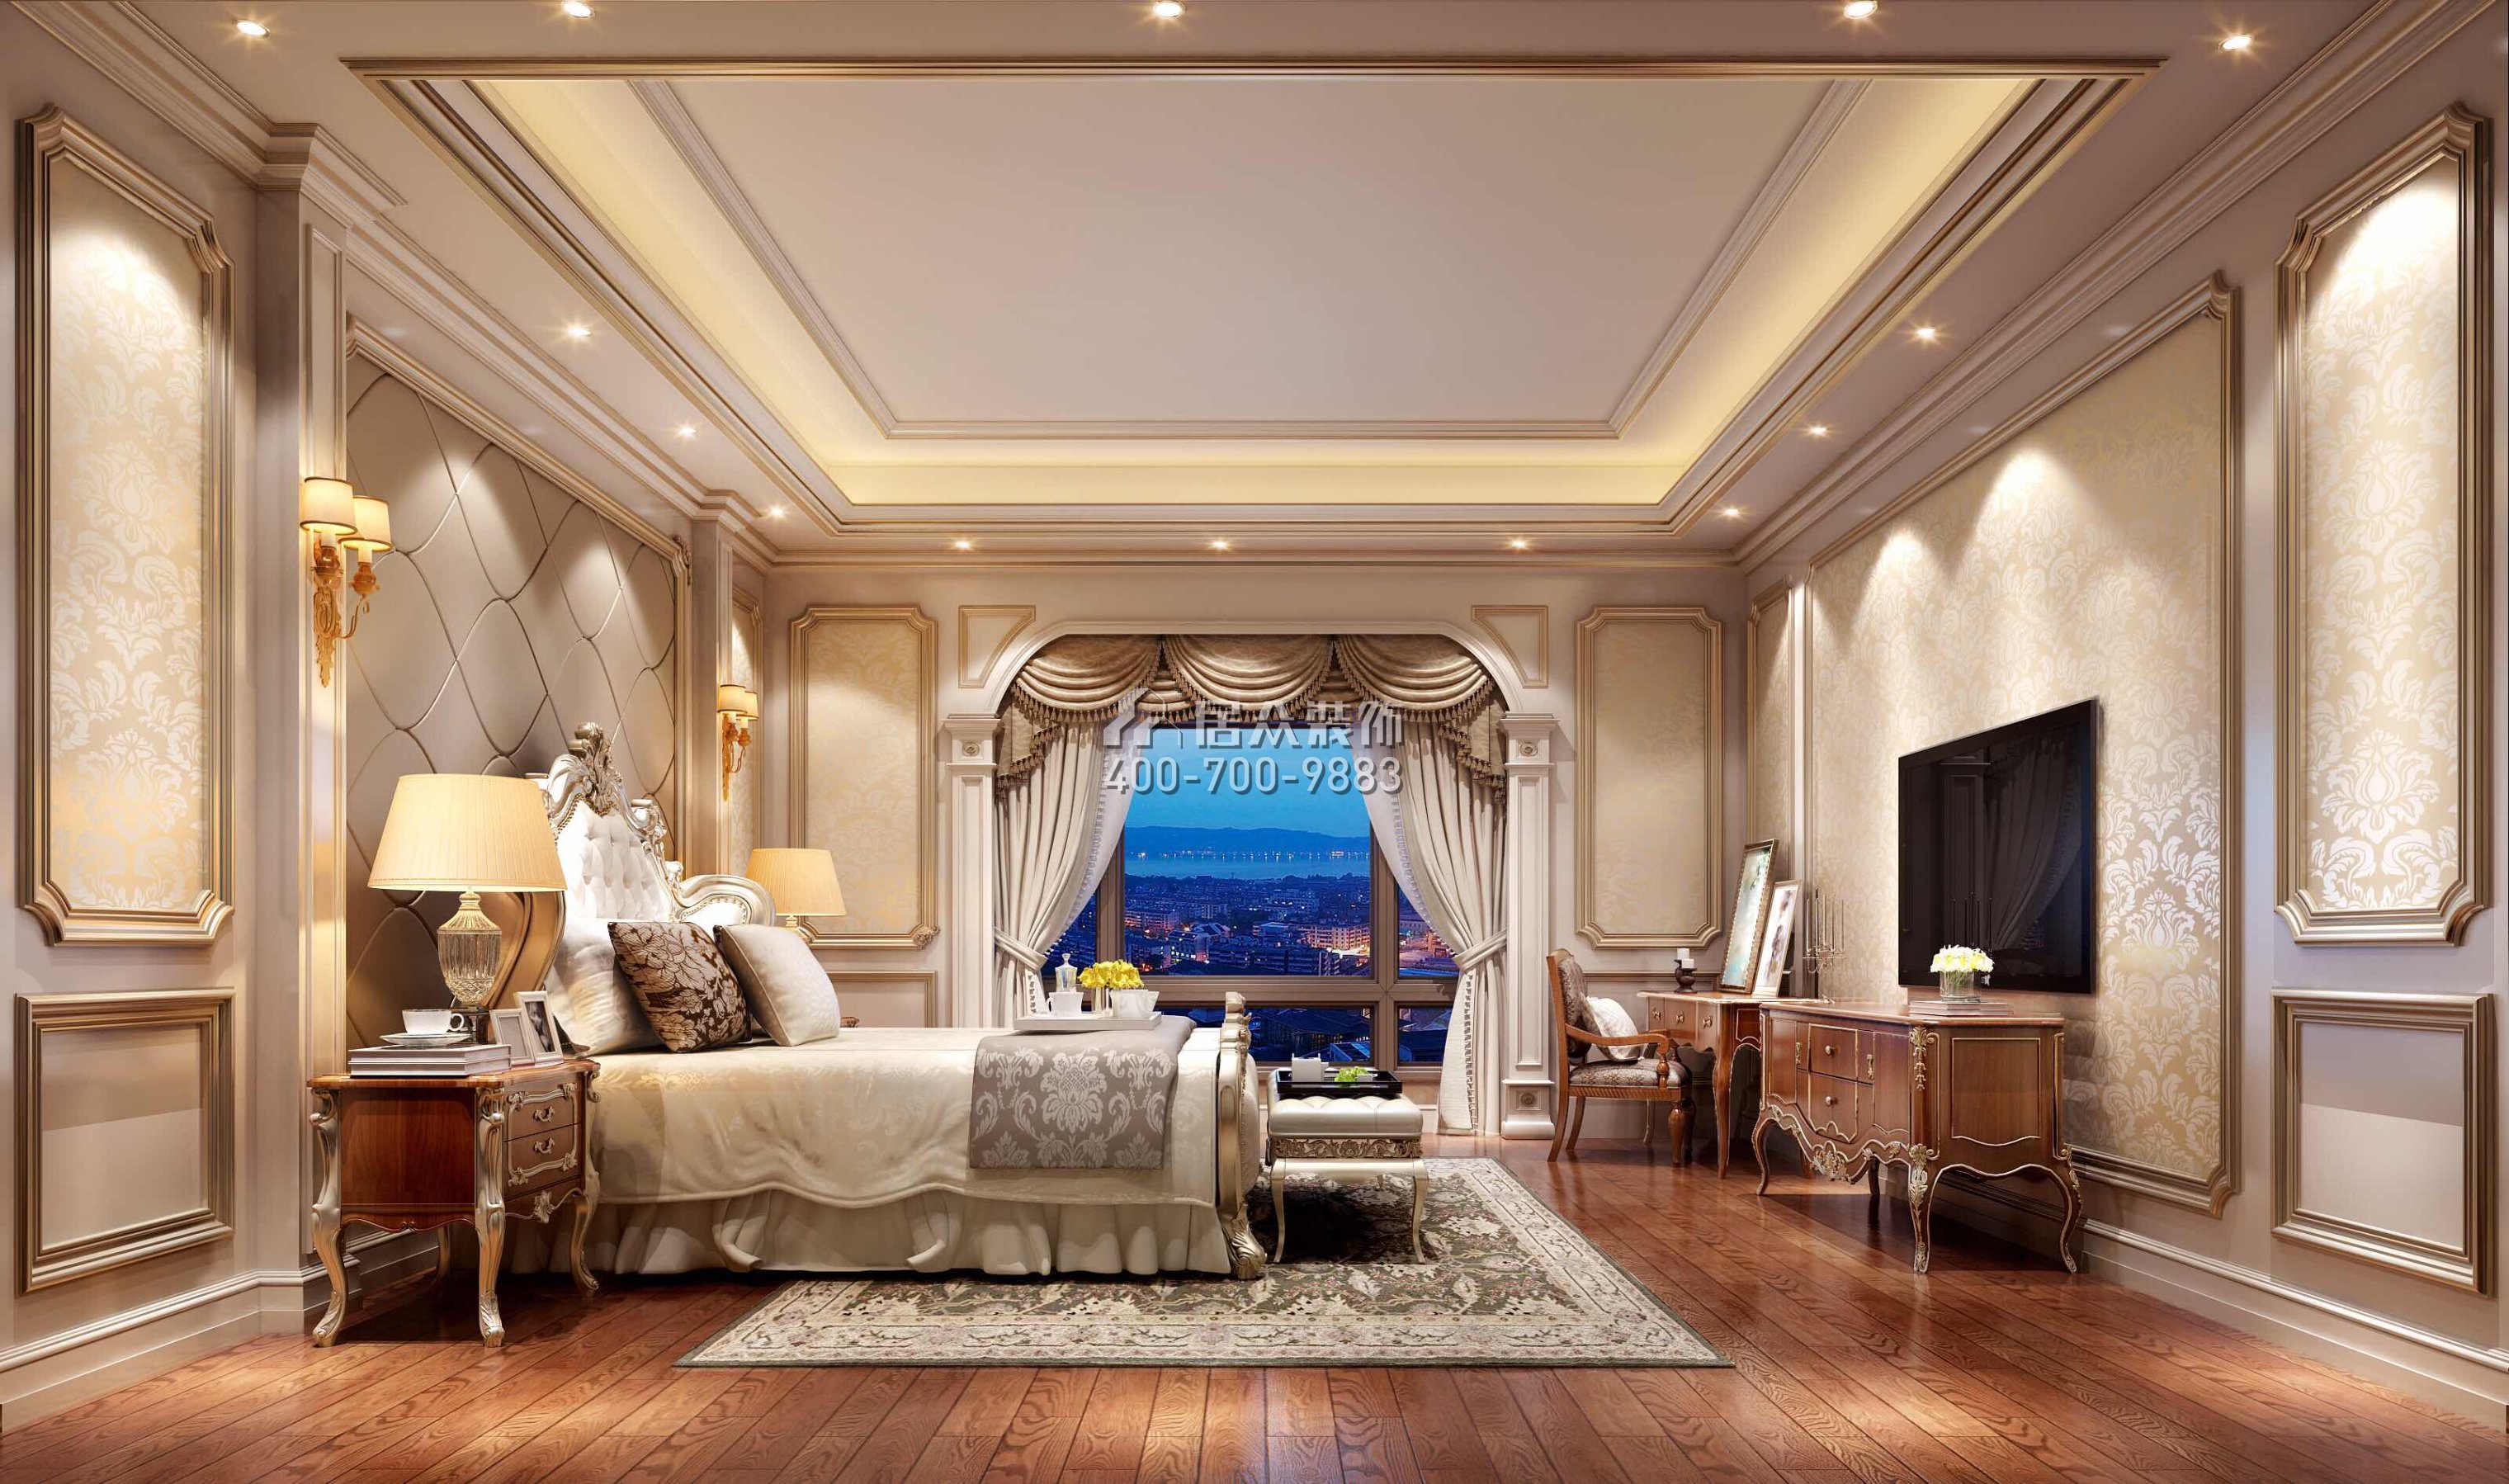 東江明珠花園800平方米歐式風格別墅戶型臥室裝修效果圖